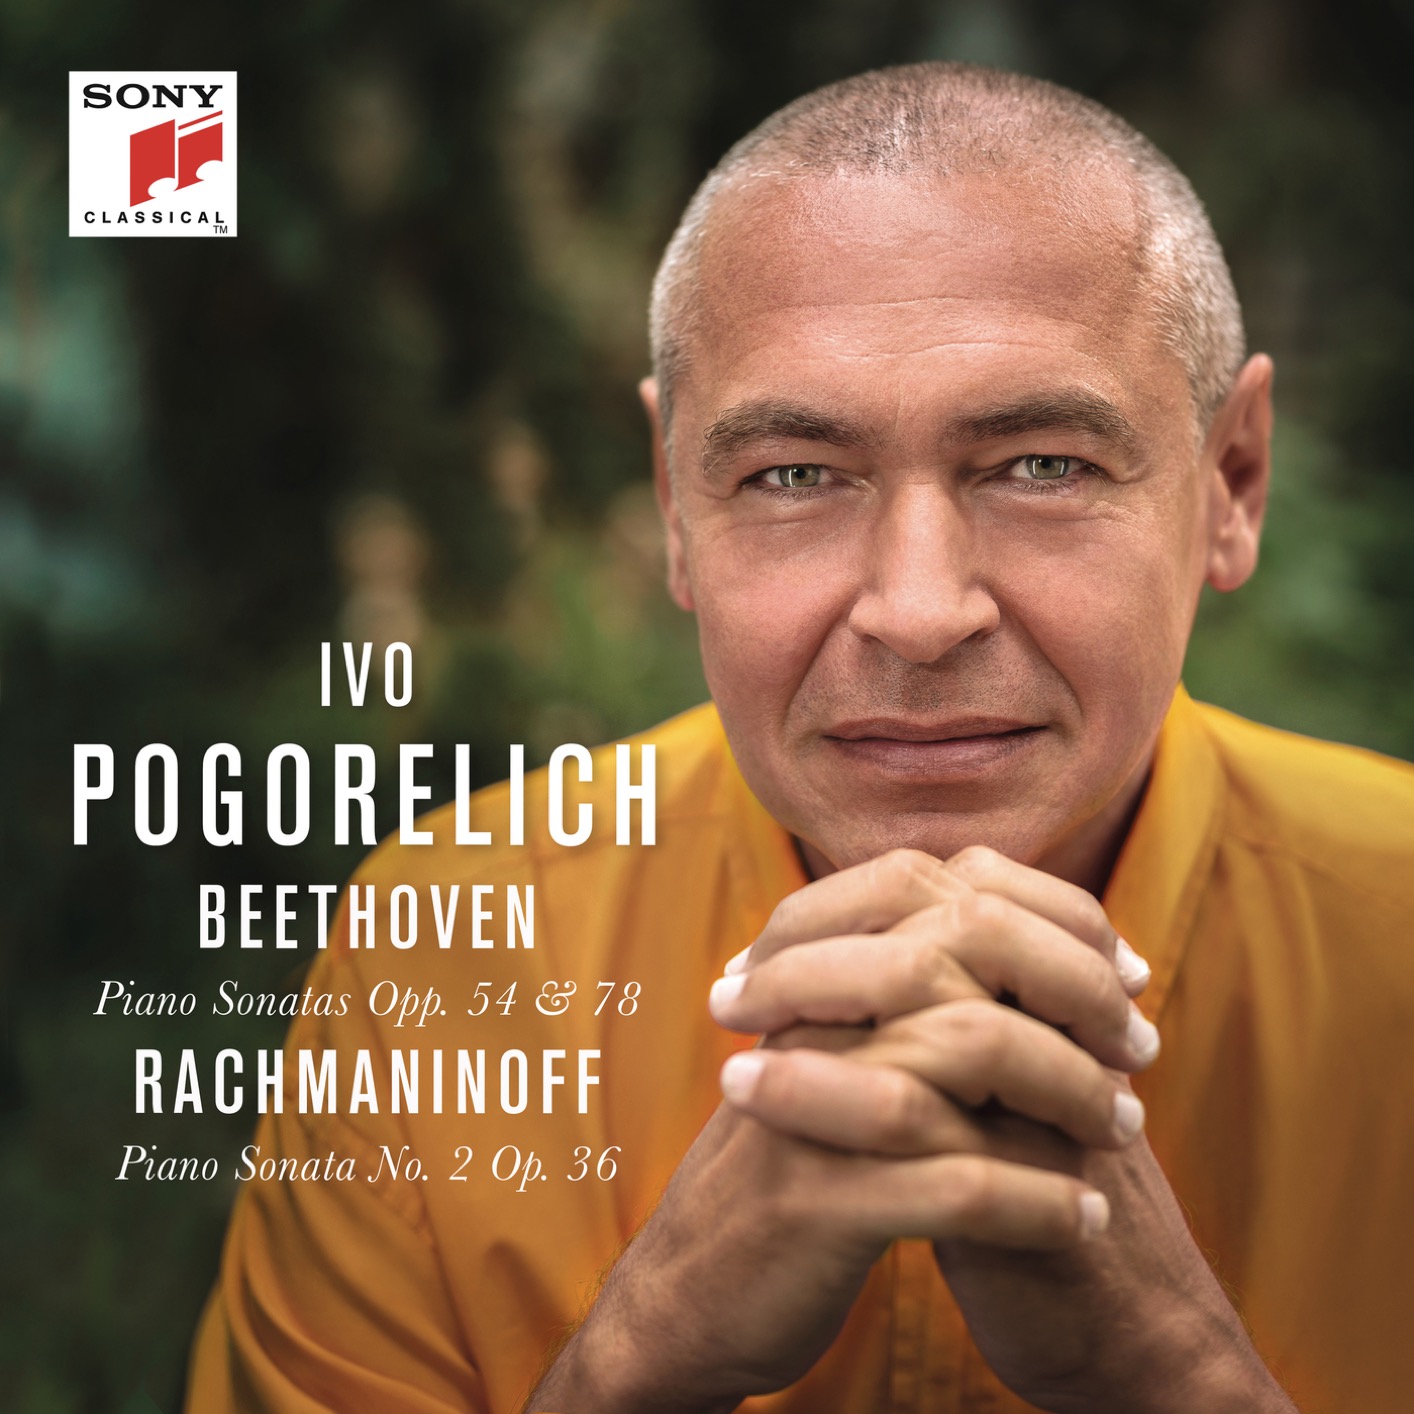 Ivo Pogorelich -Beethoven: Piano Sonatas Opp. 54 & 78 – Rachmaninoff: Piano Sonata No. 2 Op. 36 (2019) [FLAC 24bit/96kHz]